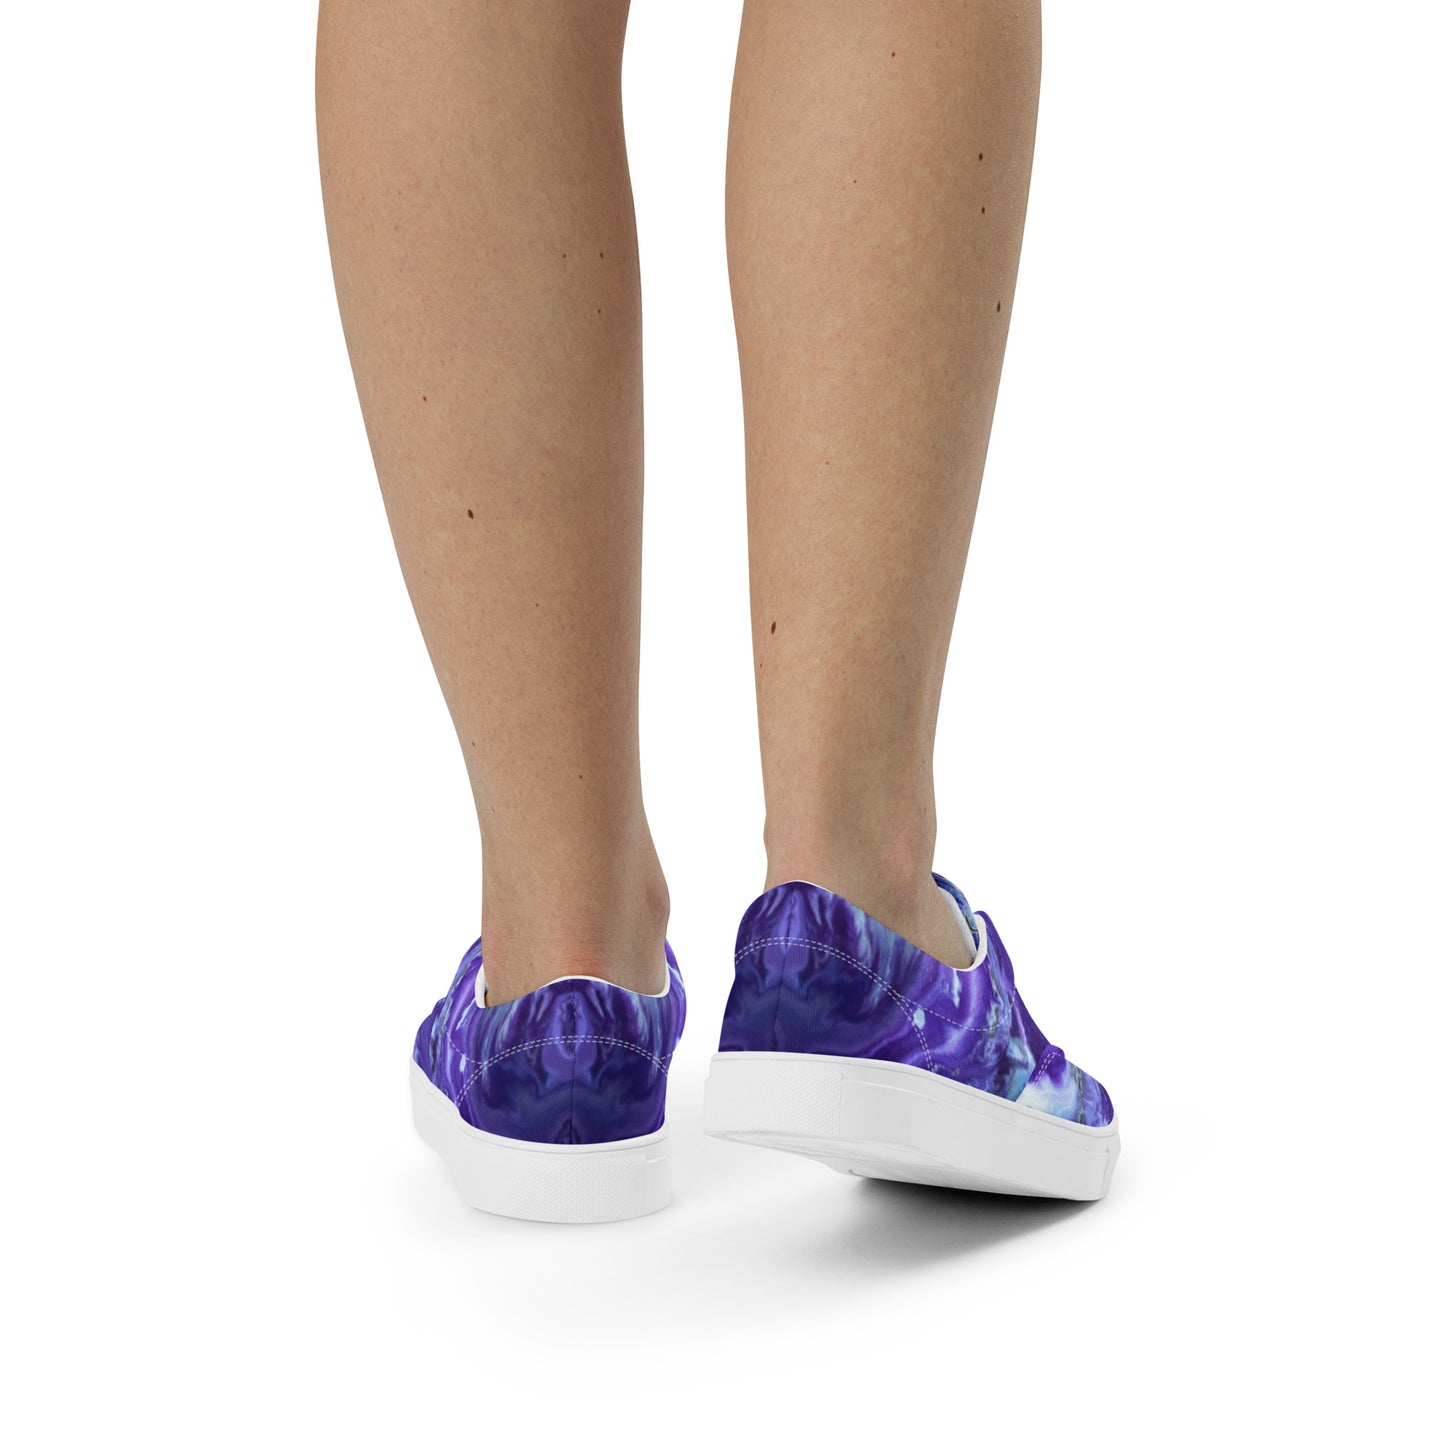 Women’s lace-up canvas shoes - Ady's Purplez!